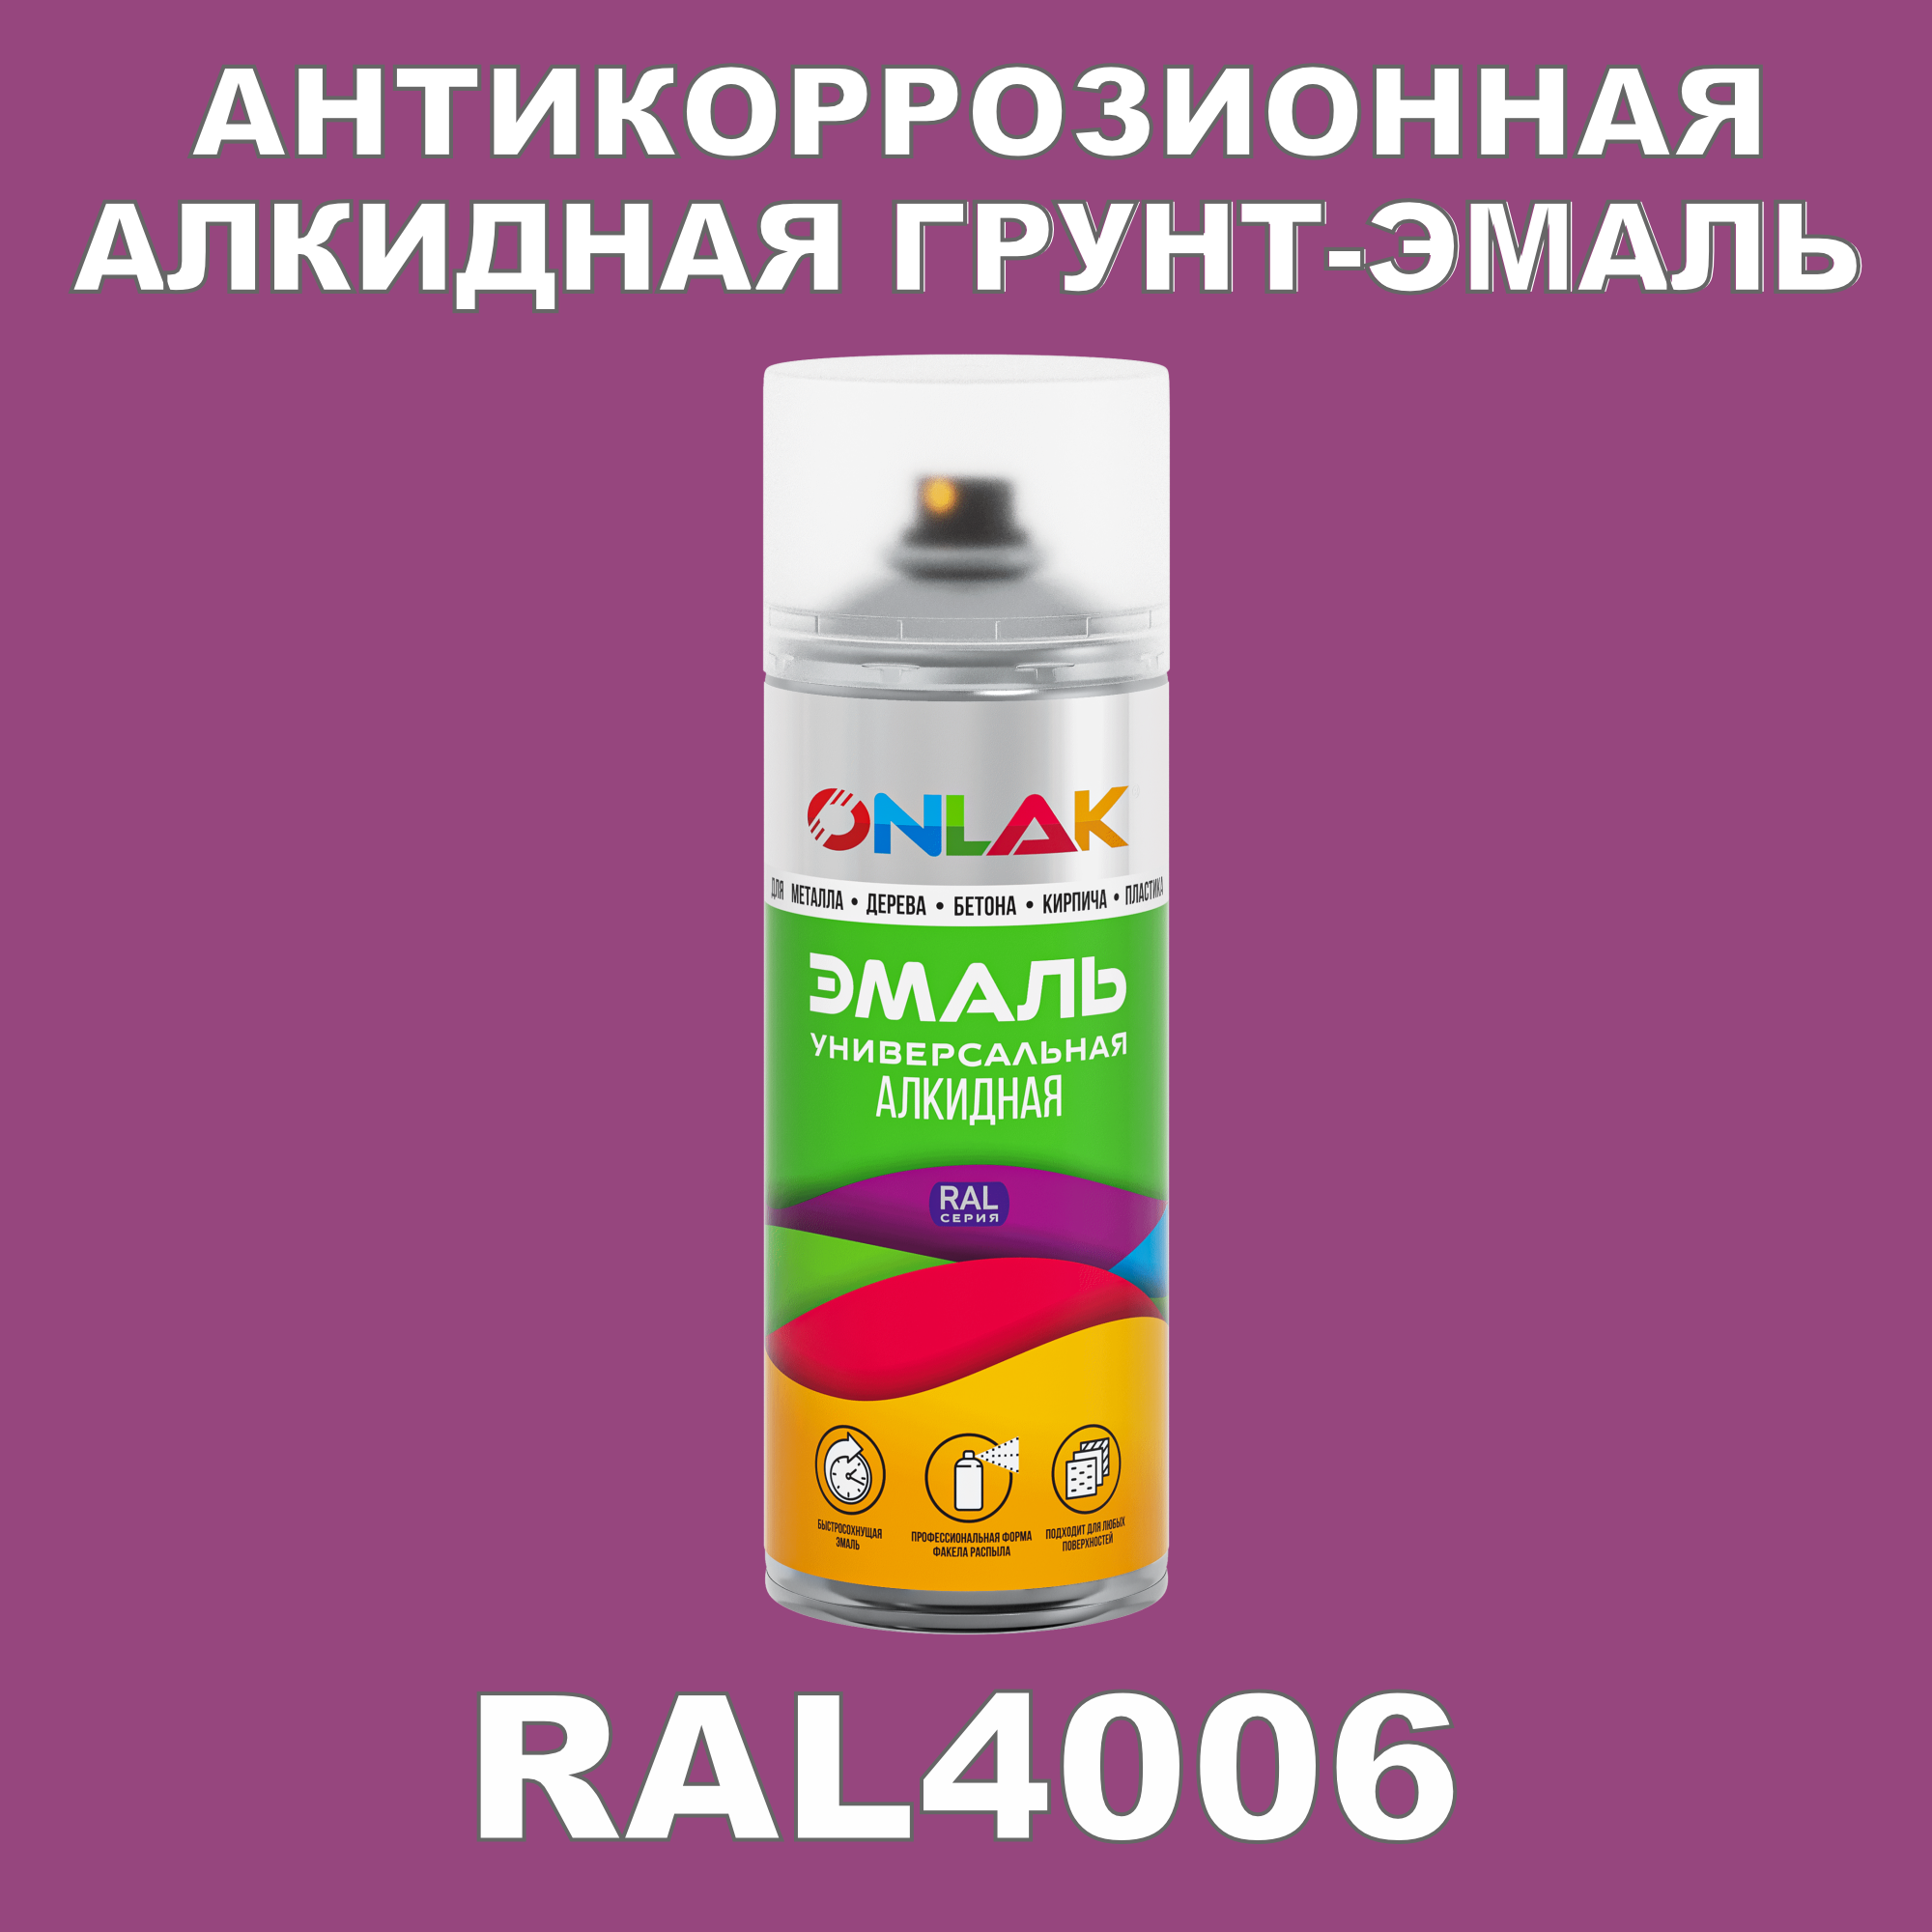 Антикоррозионная грунт-эмаль ONLAK RAL4006 полуматовая для металла и защиты от ржавчины антикоррозионная грунт эмаль onlak ral3004 полуматовая для металла и защиты от ржавчины